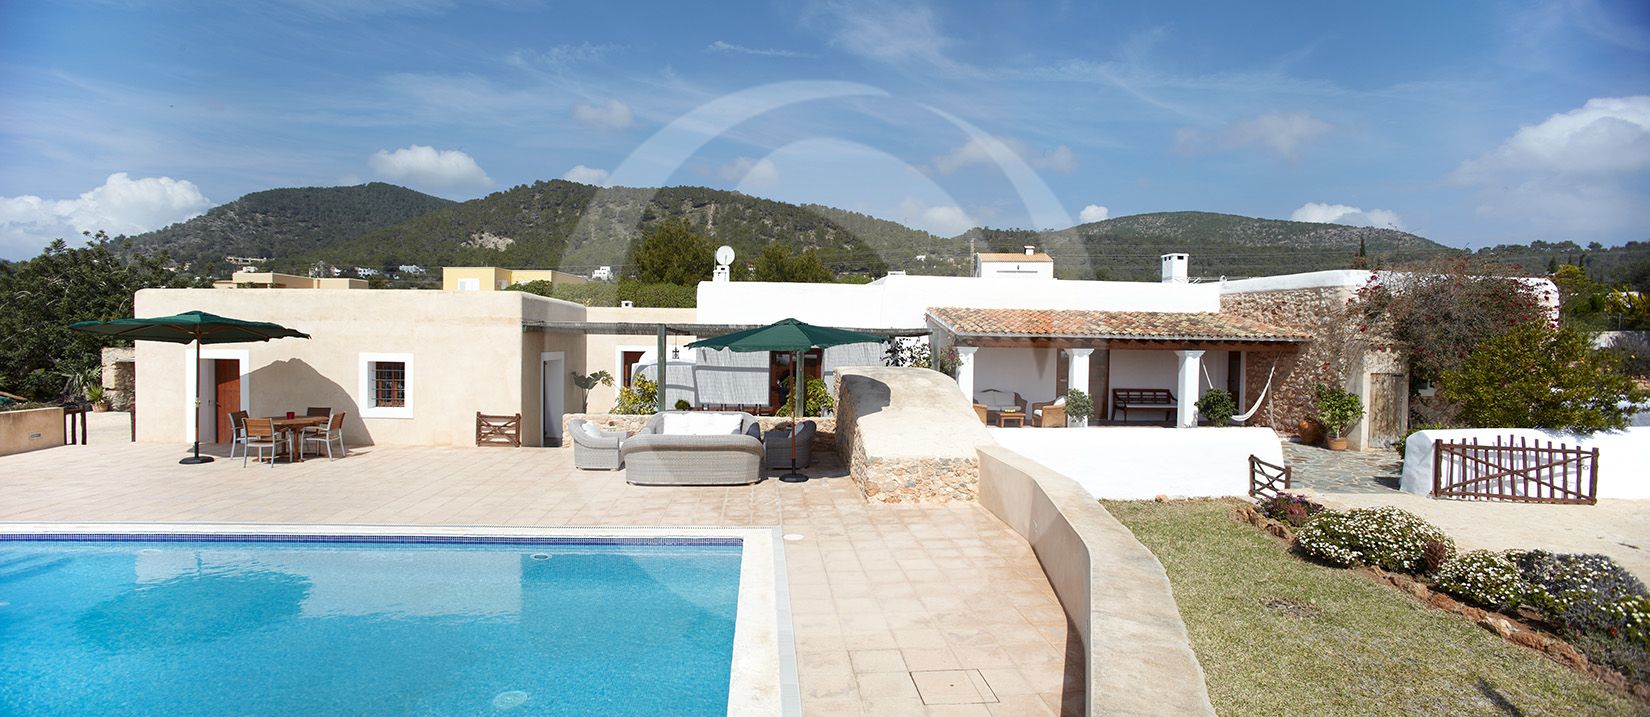 Villa Paz. Villa de 6 habitaciones en Ibiza en alquiler